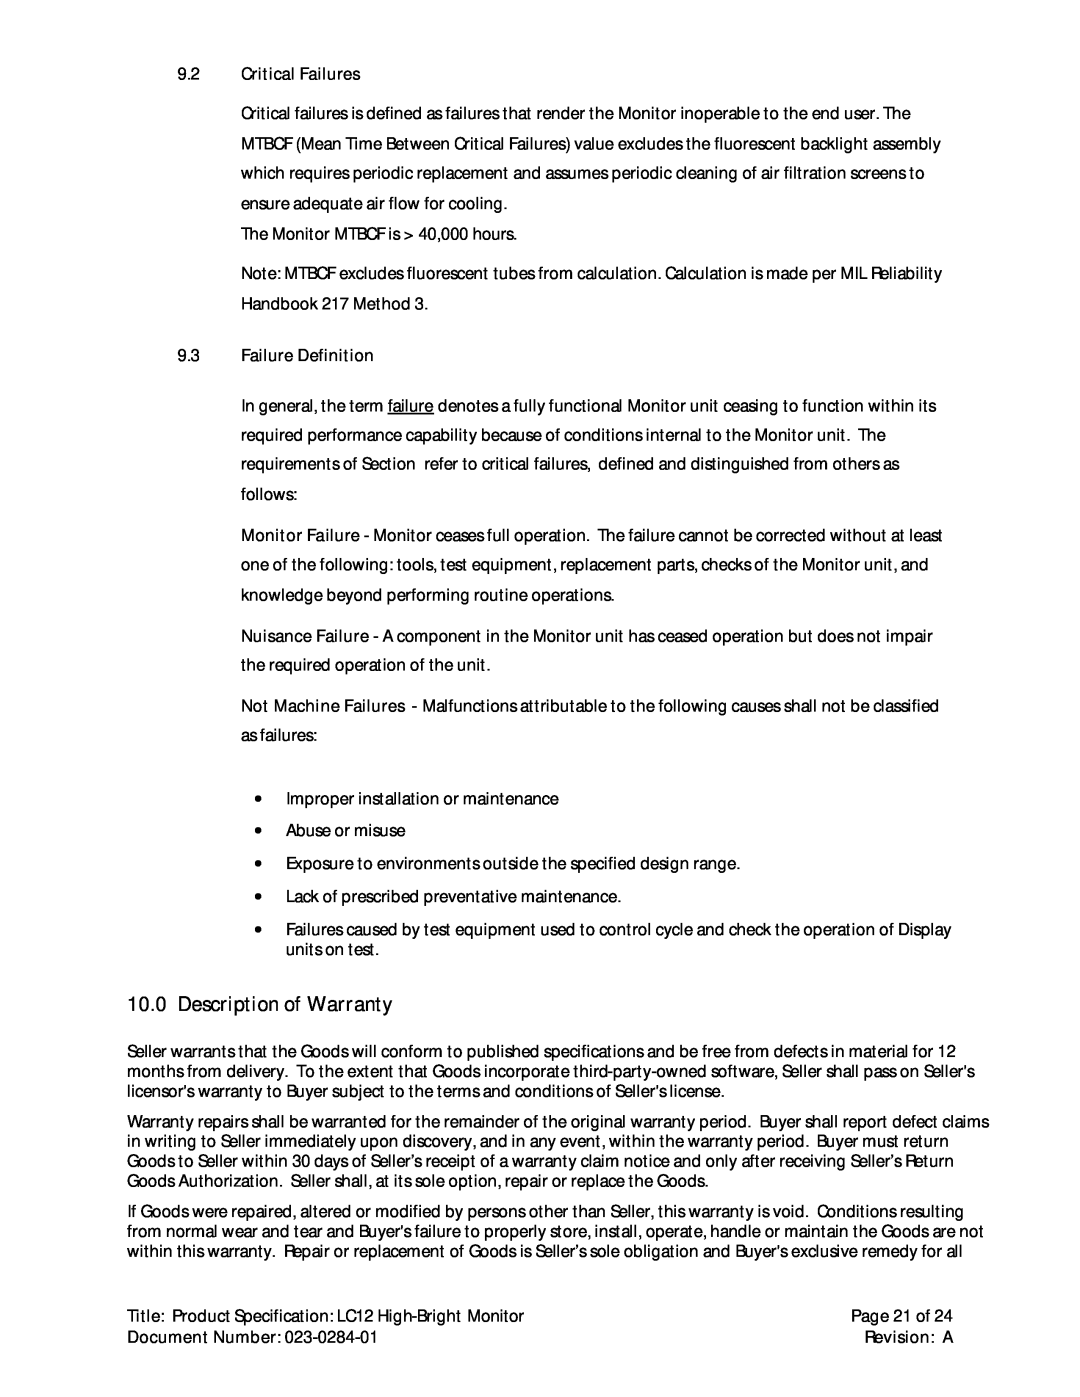 Planar LC12 manual Description of Warranty, Page 21 of 